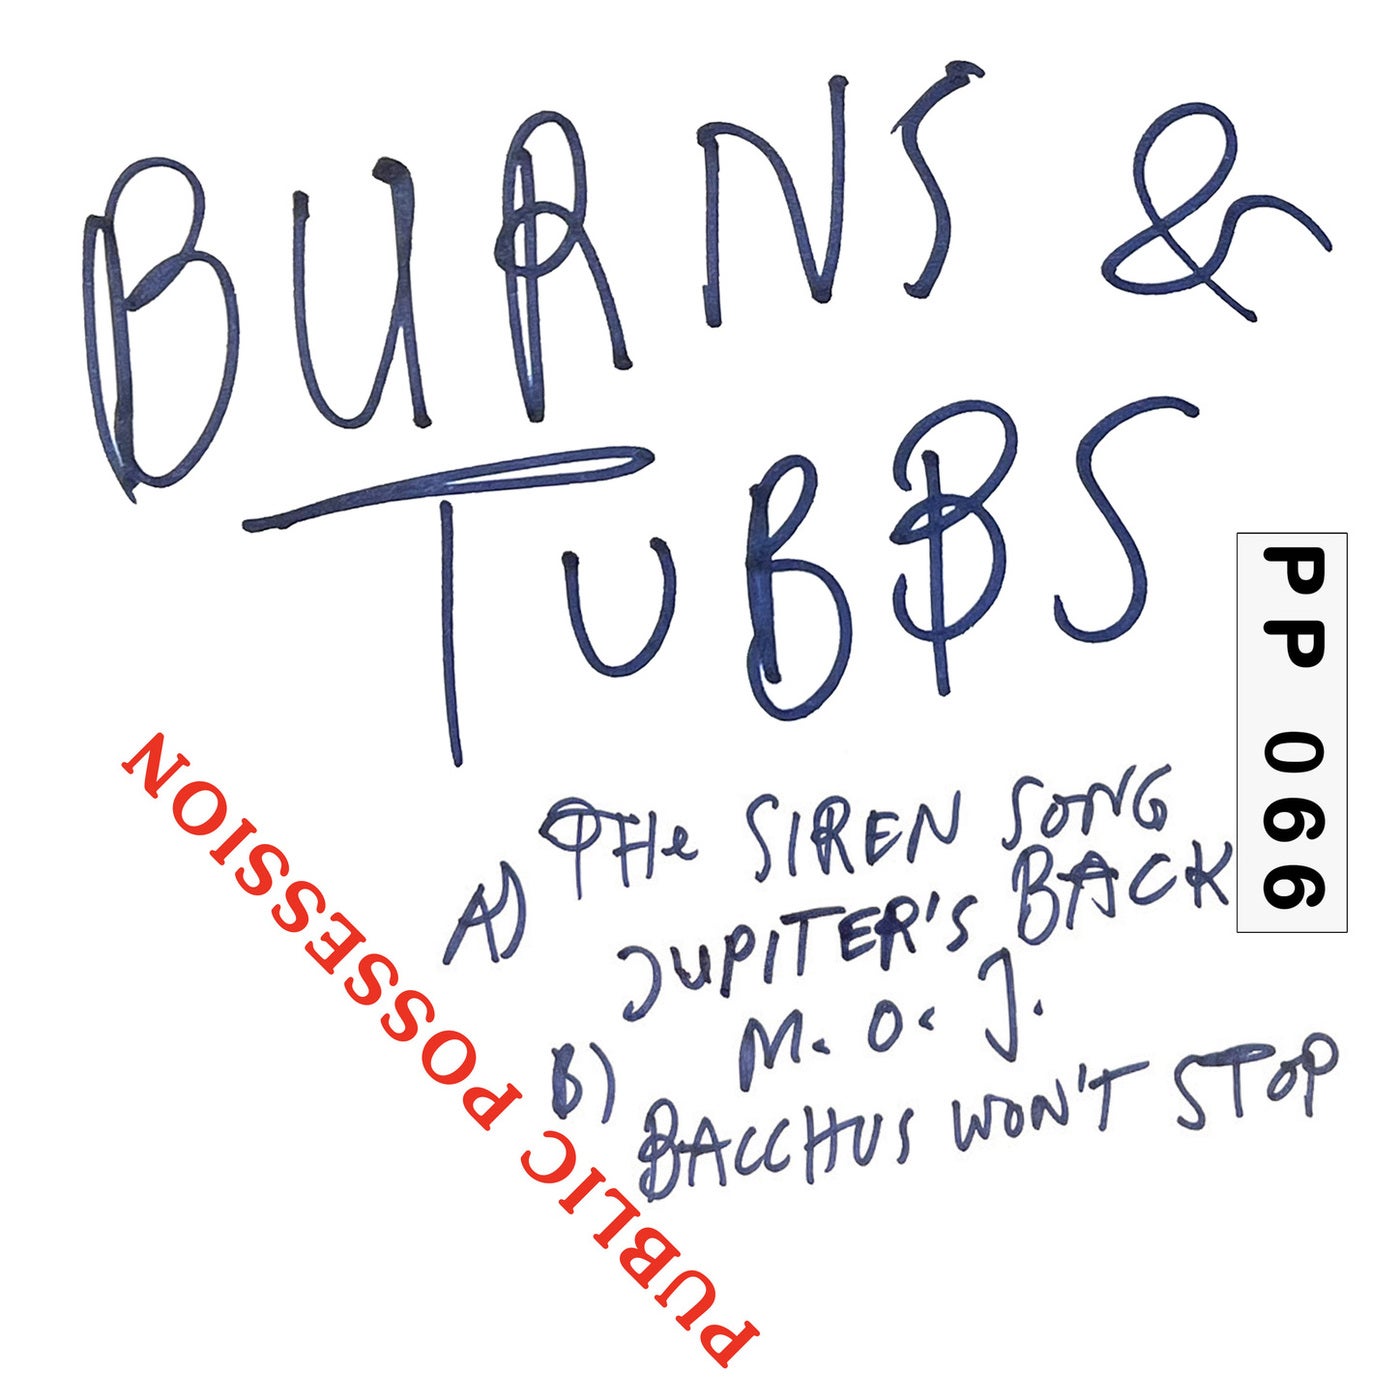 Burns & Tubbs